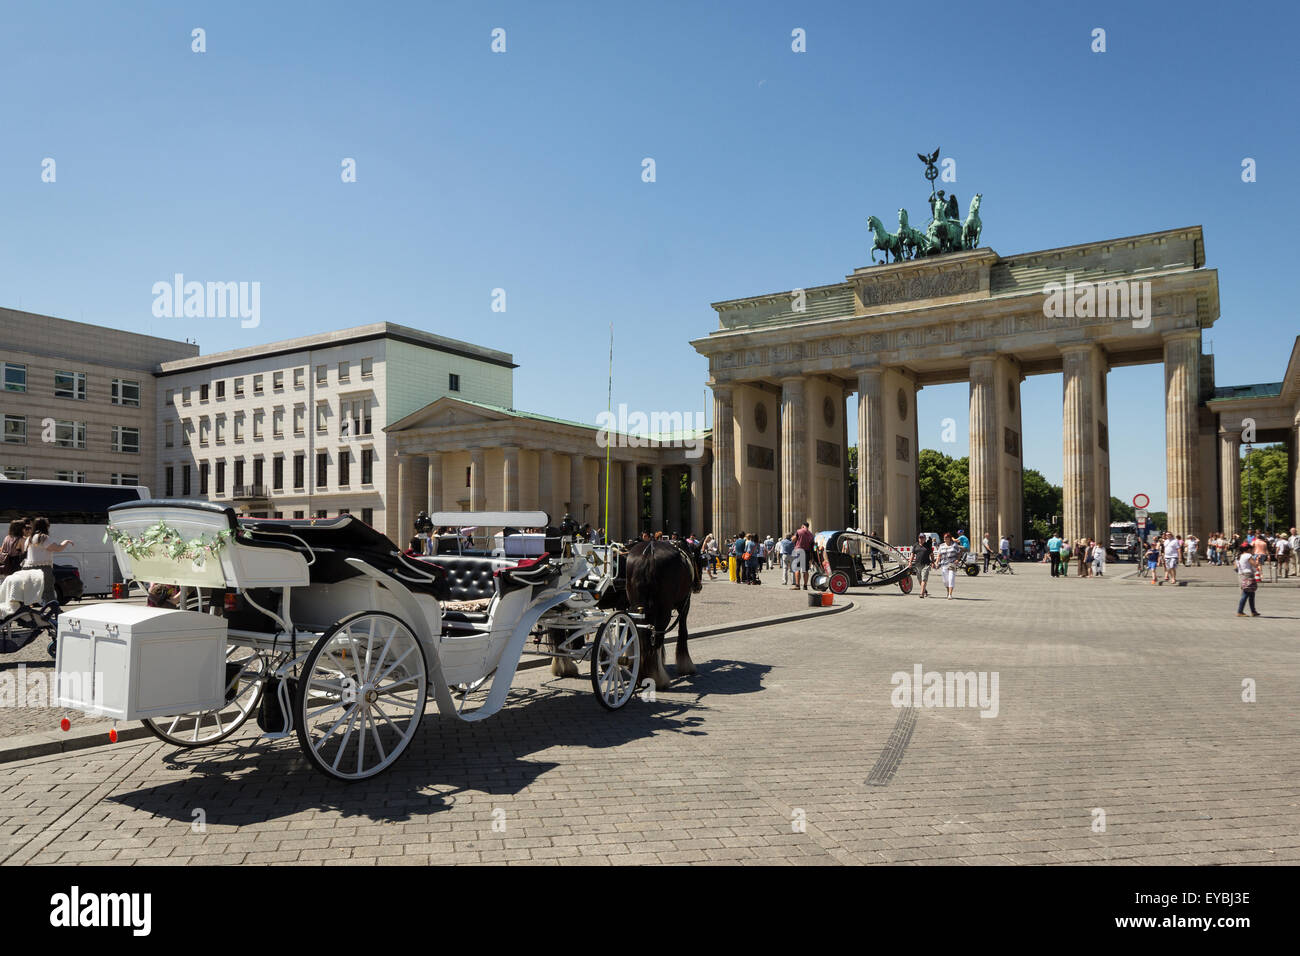 La puerta de Brandenburgo (Brandenburger Tor ) y de caballos Foto de stock